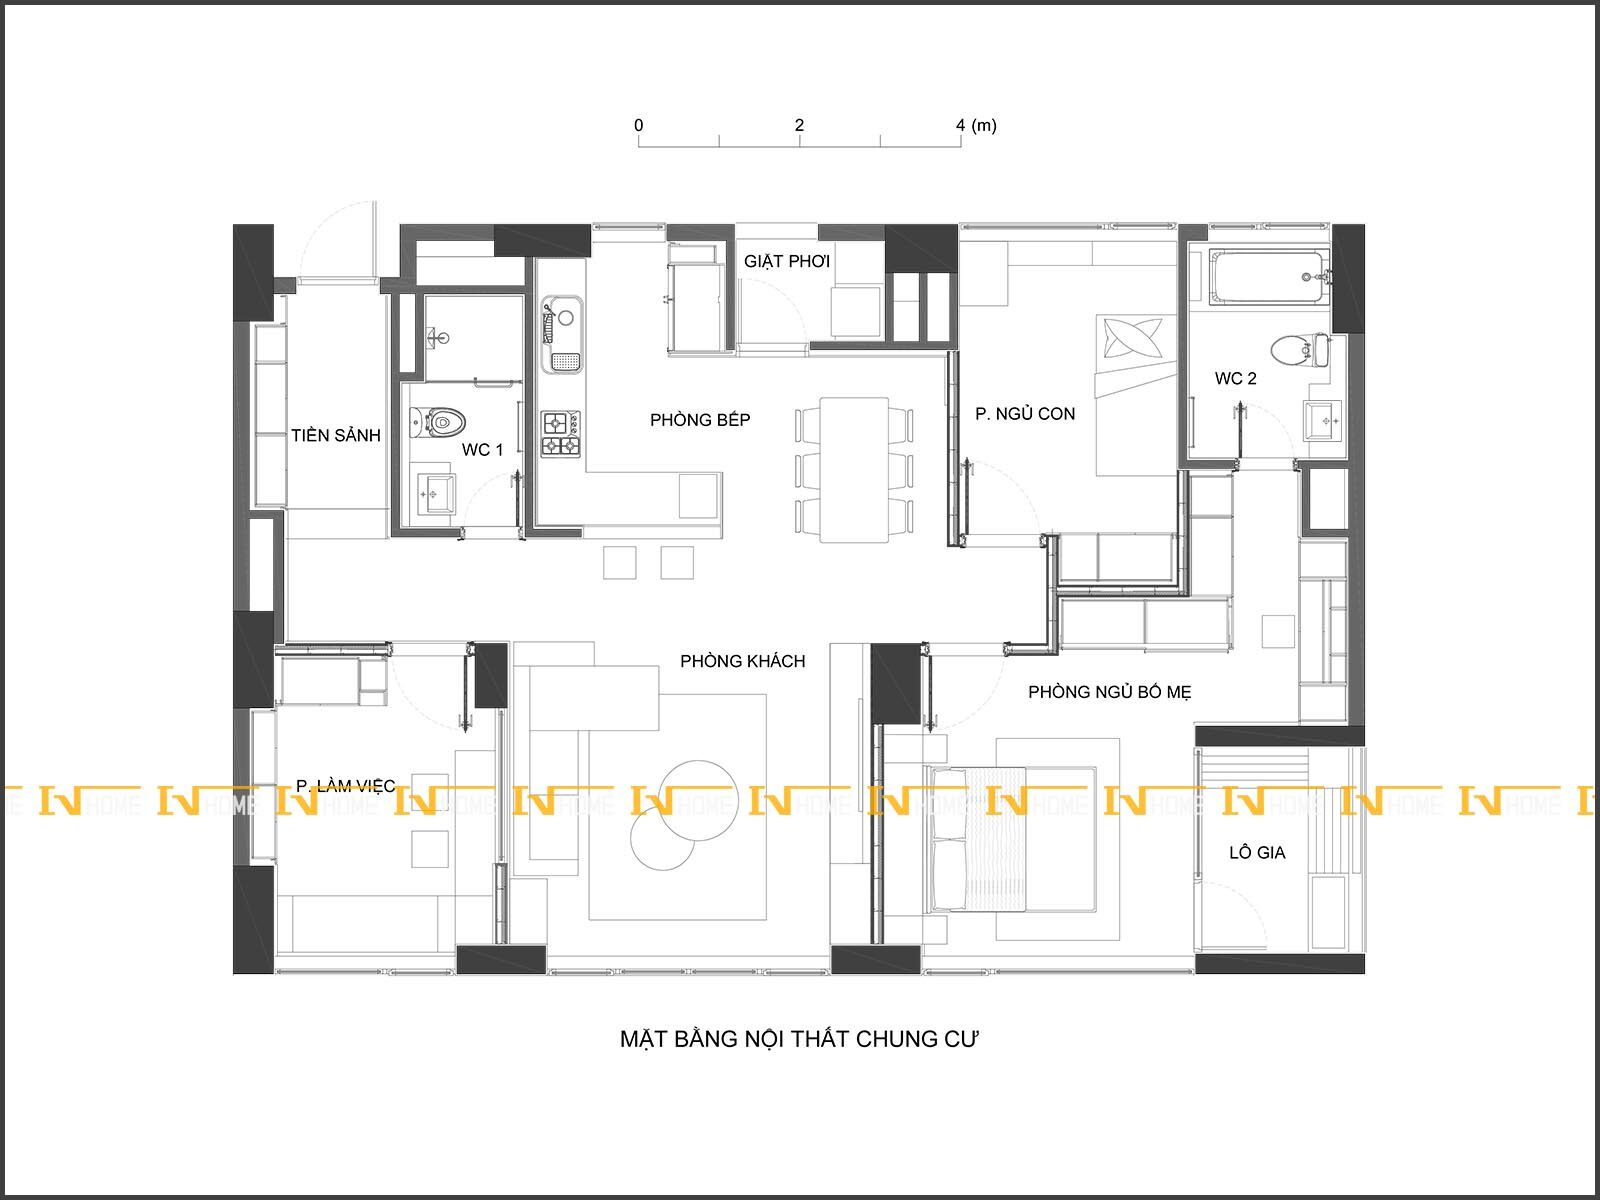 200710-2, mặt bằng nội thất chung cư 130 m2.